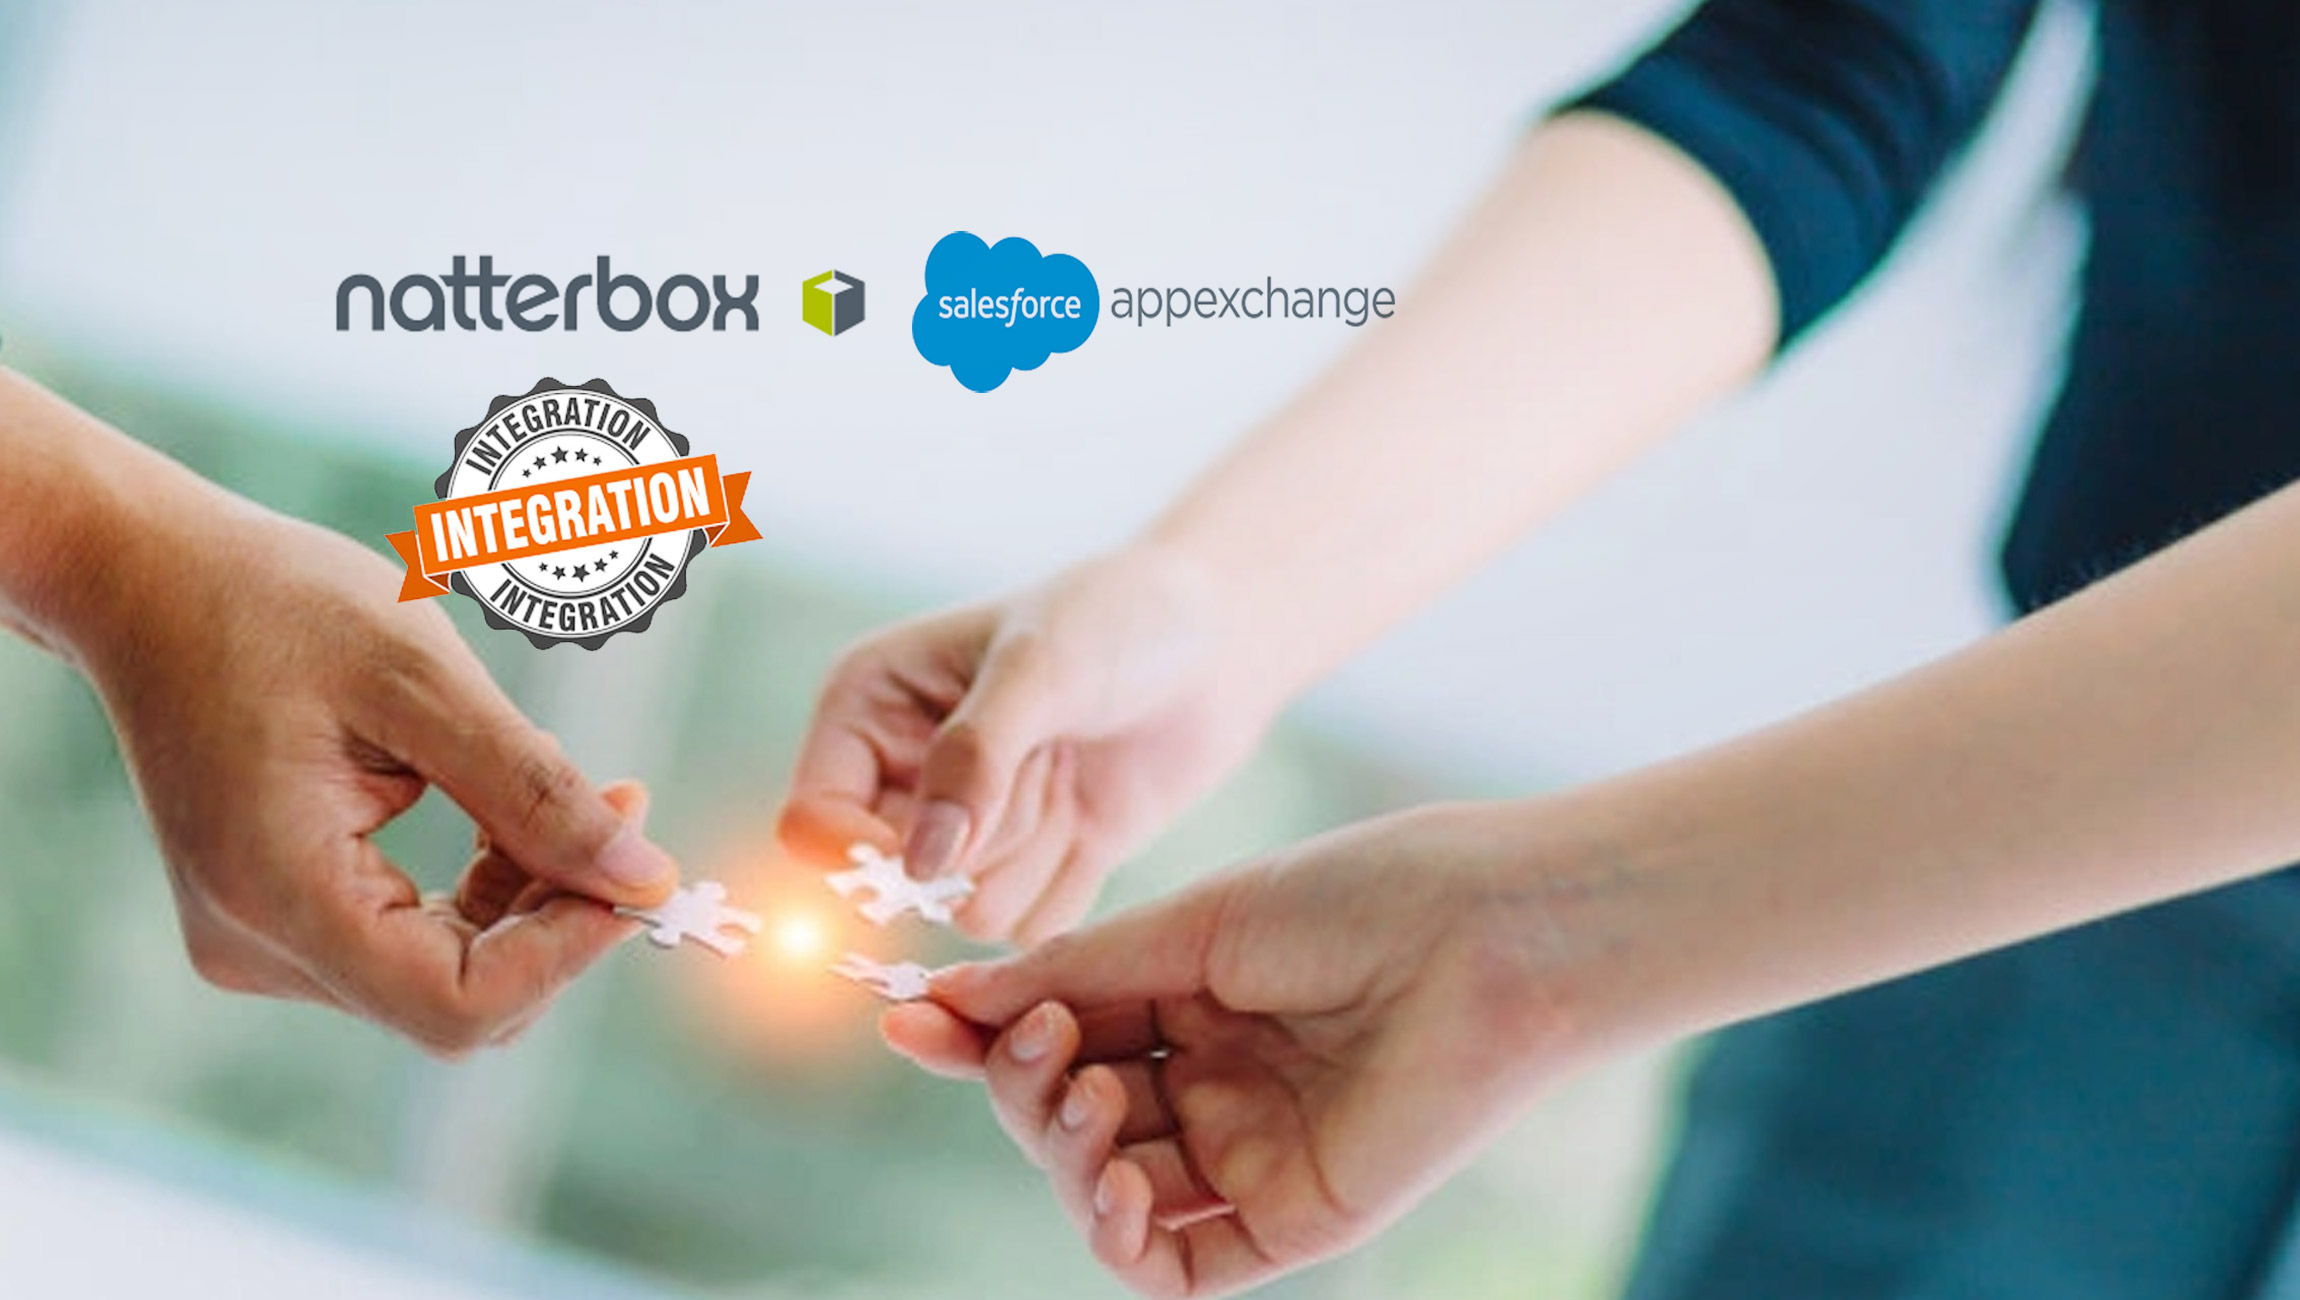 Natterbox Announces its Latest Integration for Service Cloud Voice on Salesforce AppExchange, the World's Leading Enterprise Cloud Marketplace